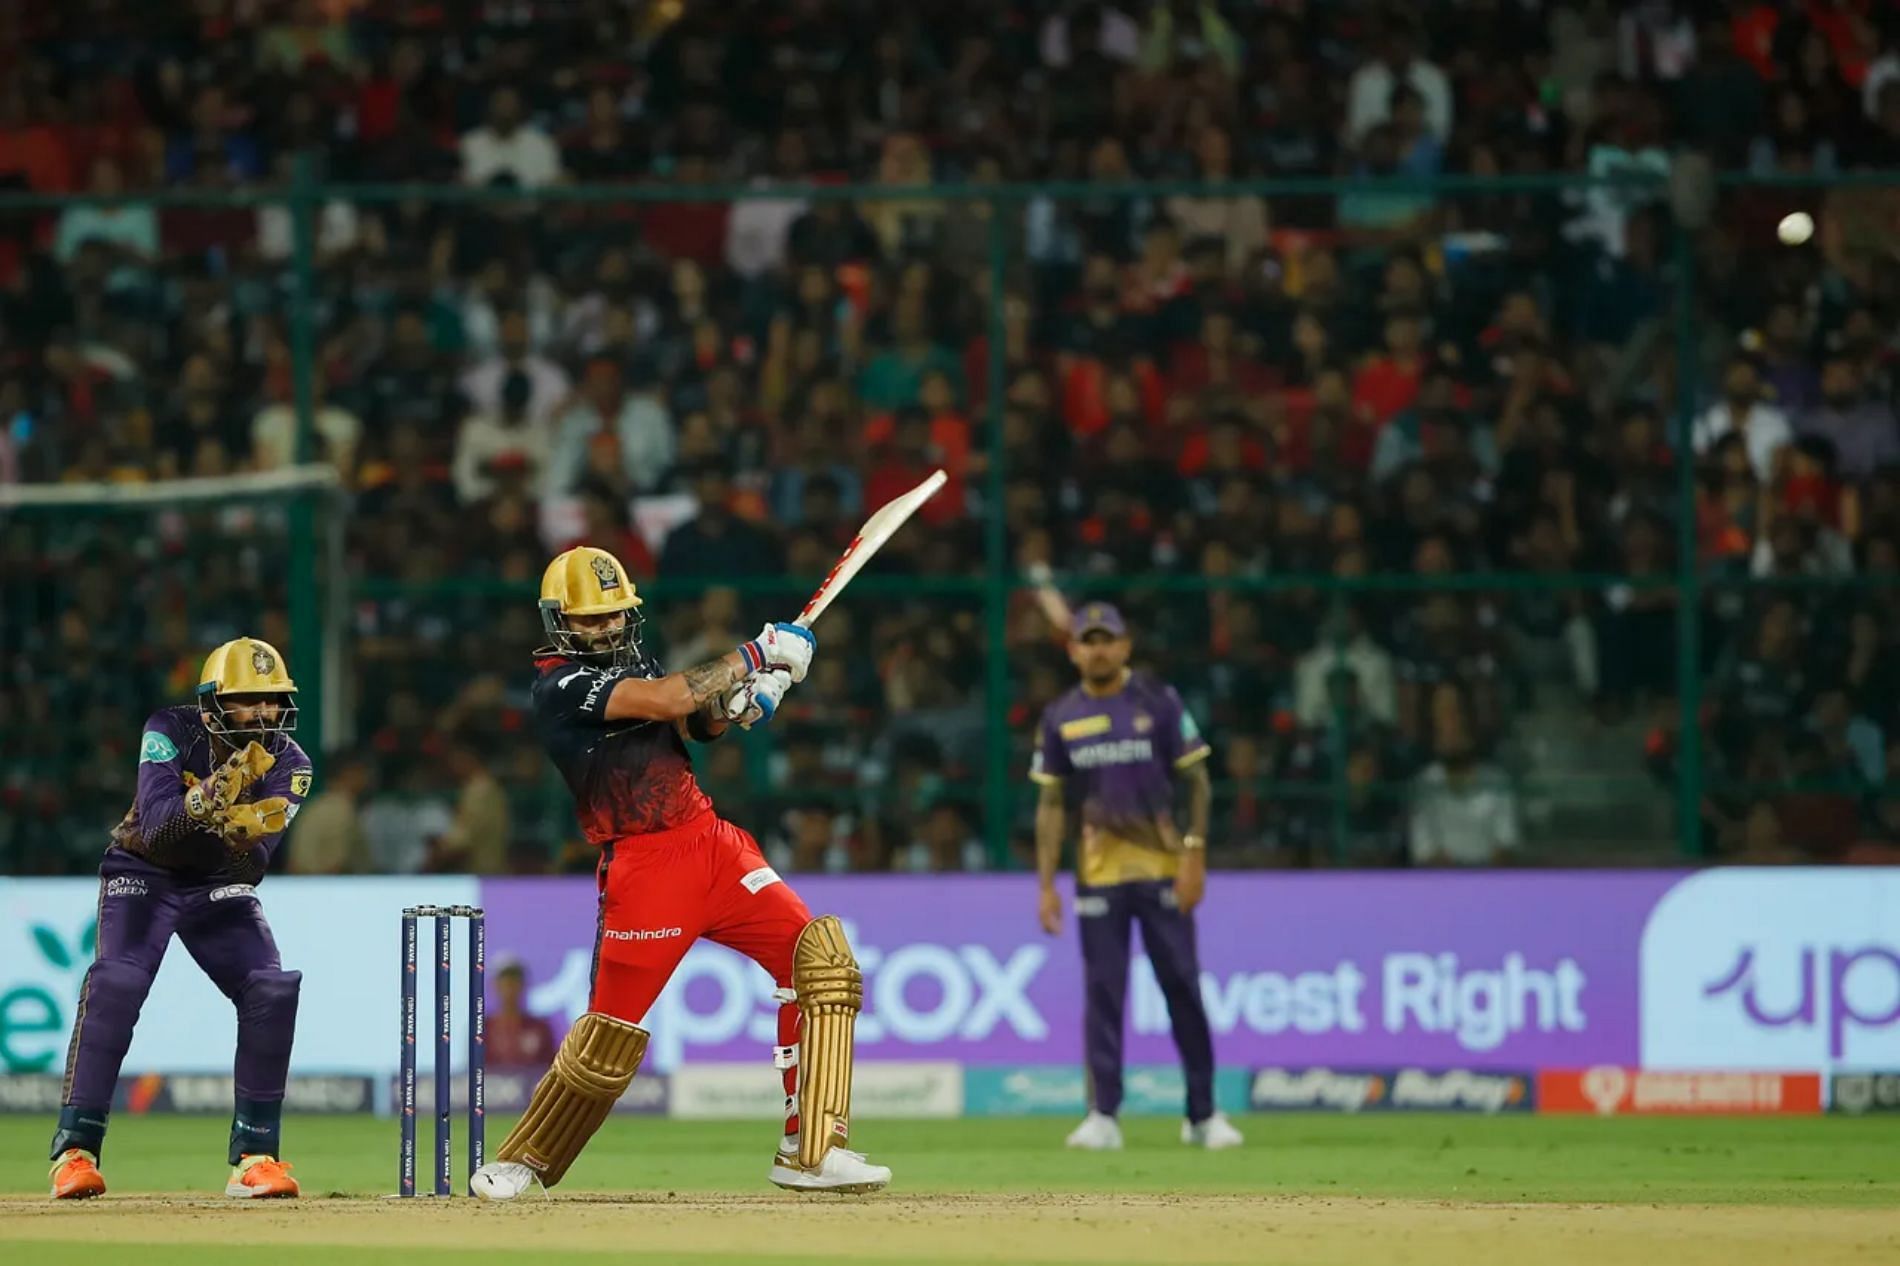 Virat Kohli has scored 944 runs in 30 innings against KKR. (Pic: BCCI/ iplt20.com)